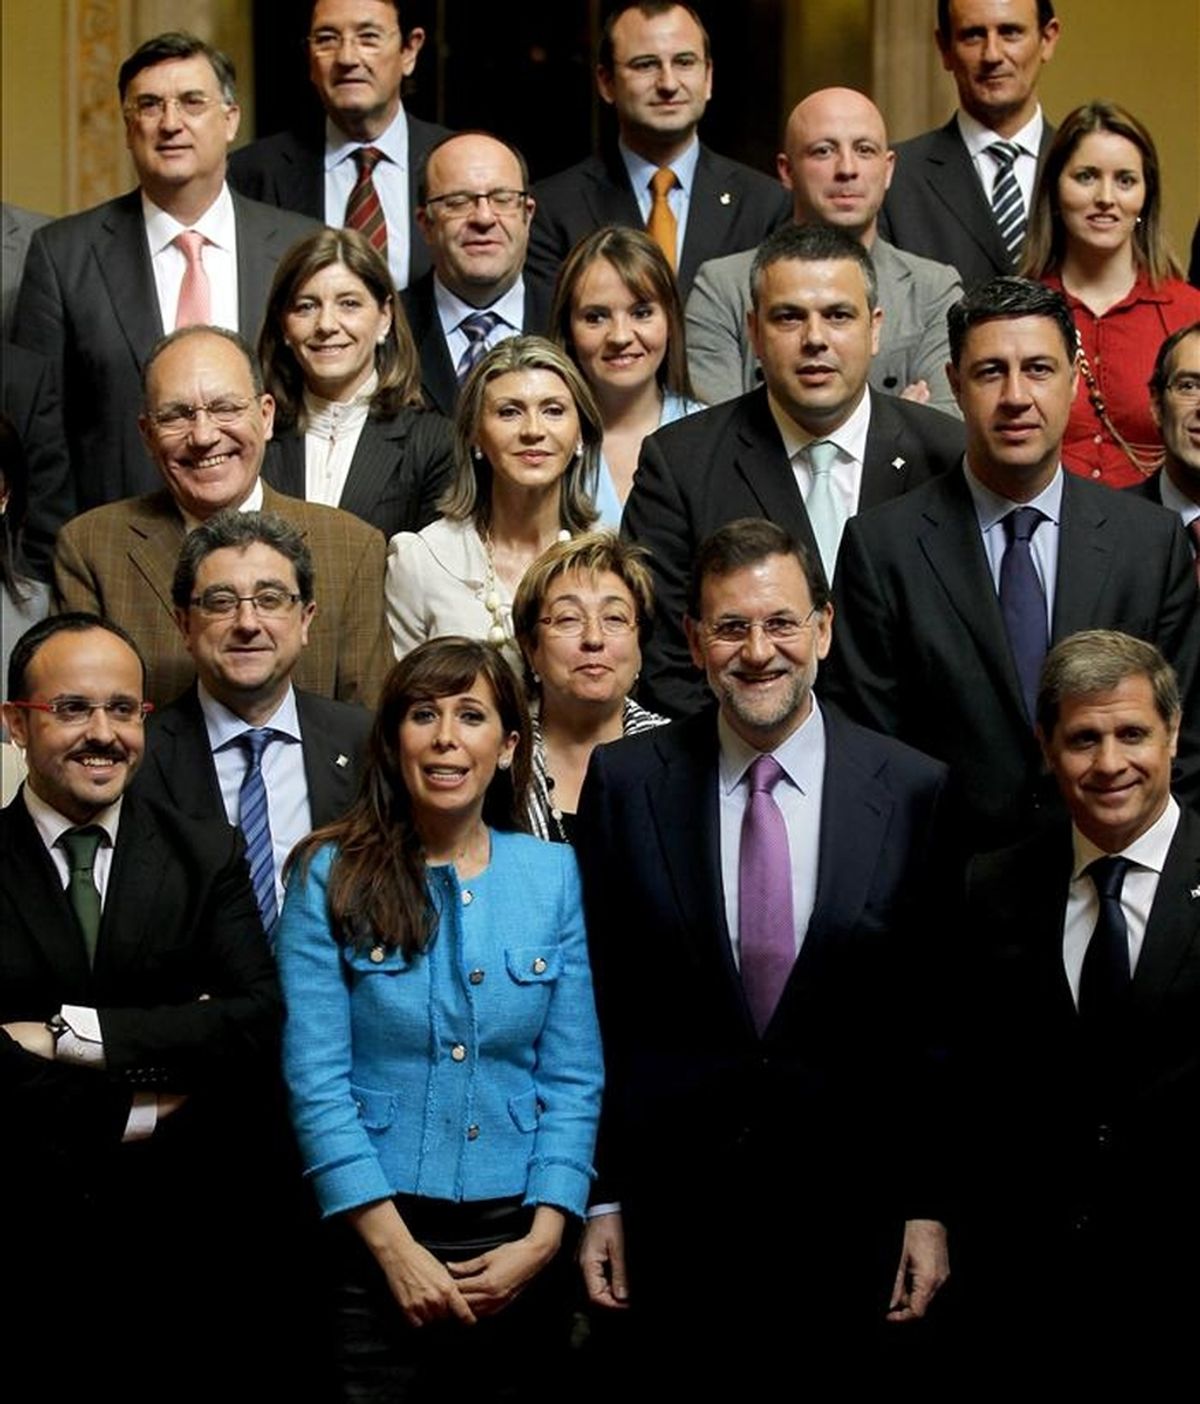 El líder del Partido Popular (PP), Mariano Rajoy (2ºd), acompañado de su homóloga en Cataluña, Alícia Sánchez-Camacho (2ºi), posan conjuntamente con los diputados de su grupo en el Parlament y los candidatos a las alcaldías de las principales ciudades catalanas, durante la visita que ha realizado esta mañana a la cámara catalana. EFE